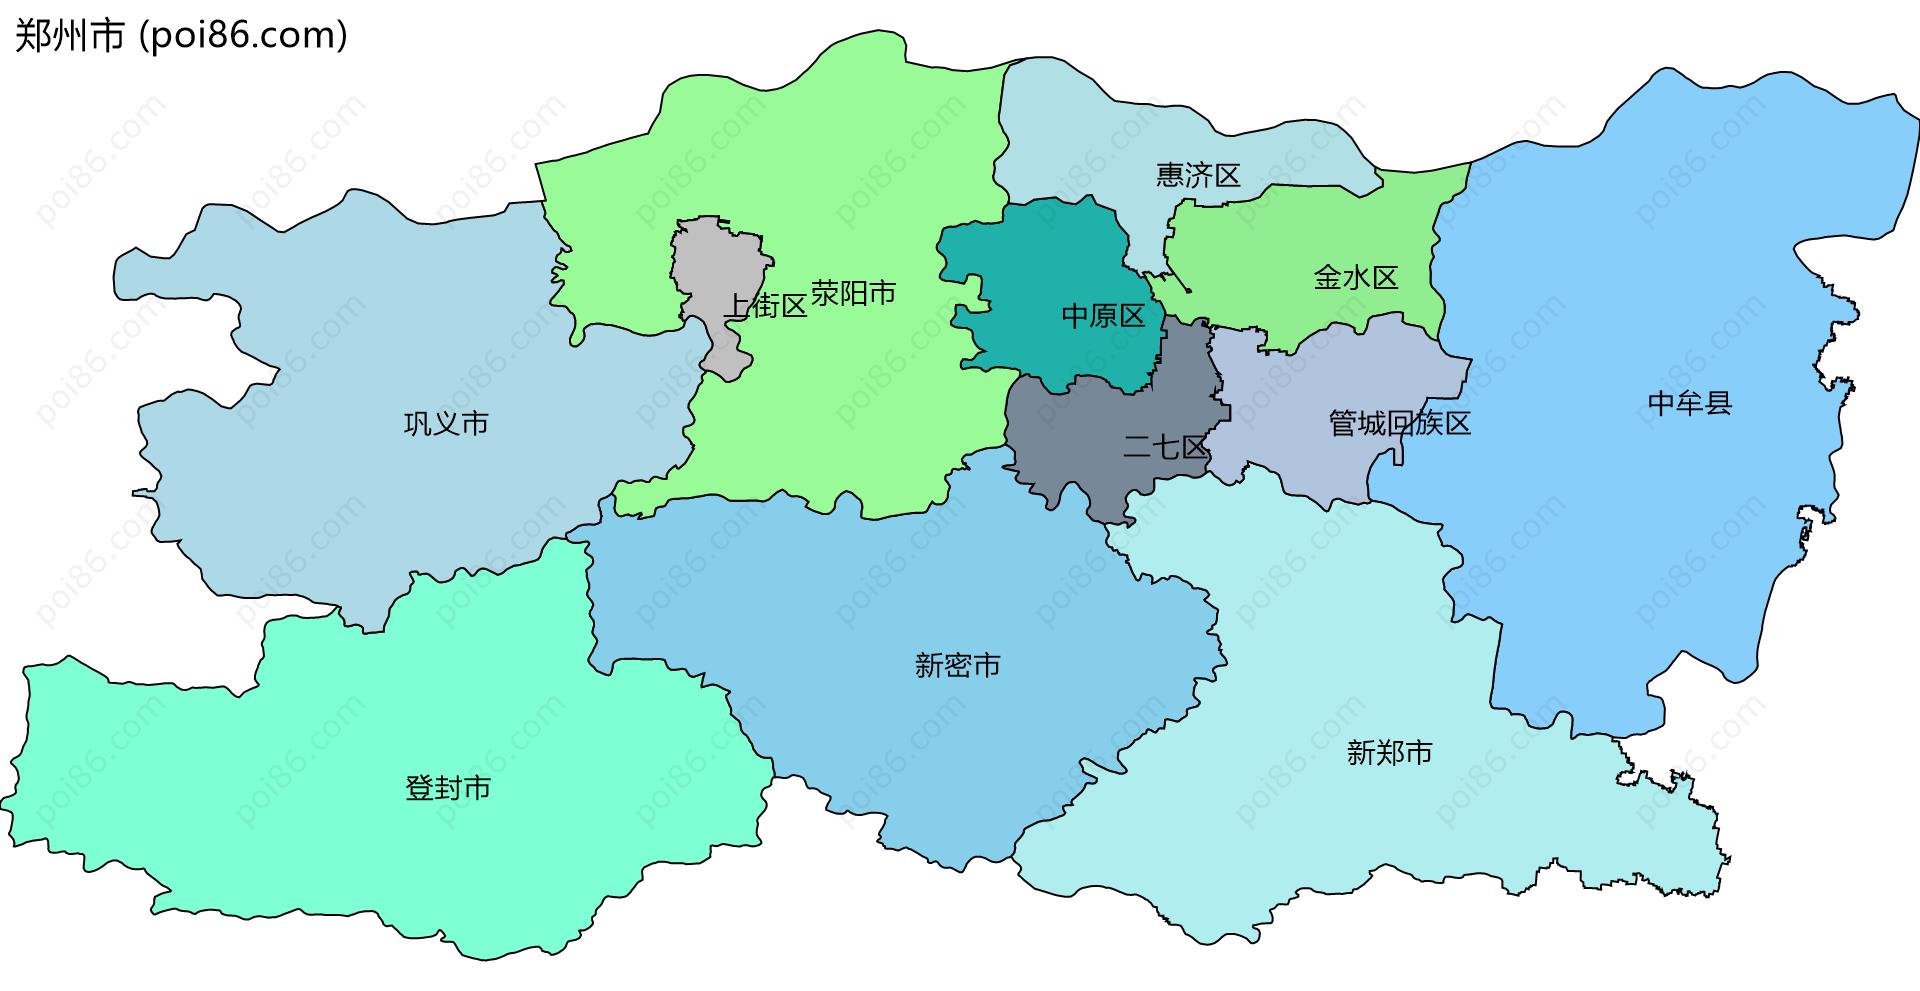 郑州市边界地图